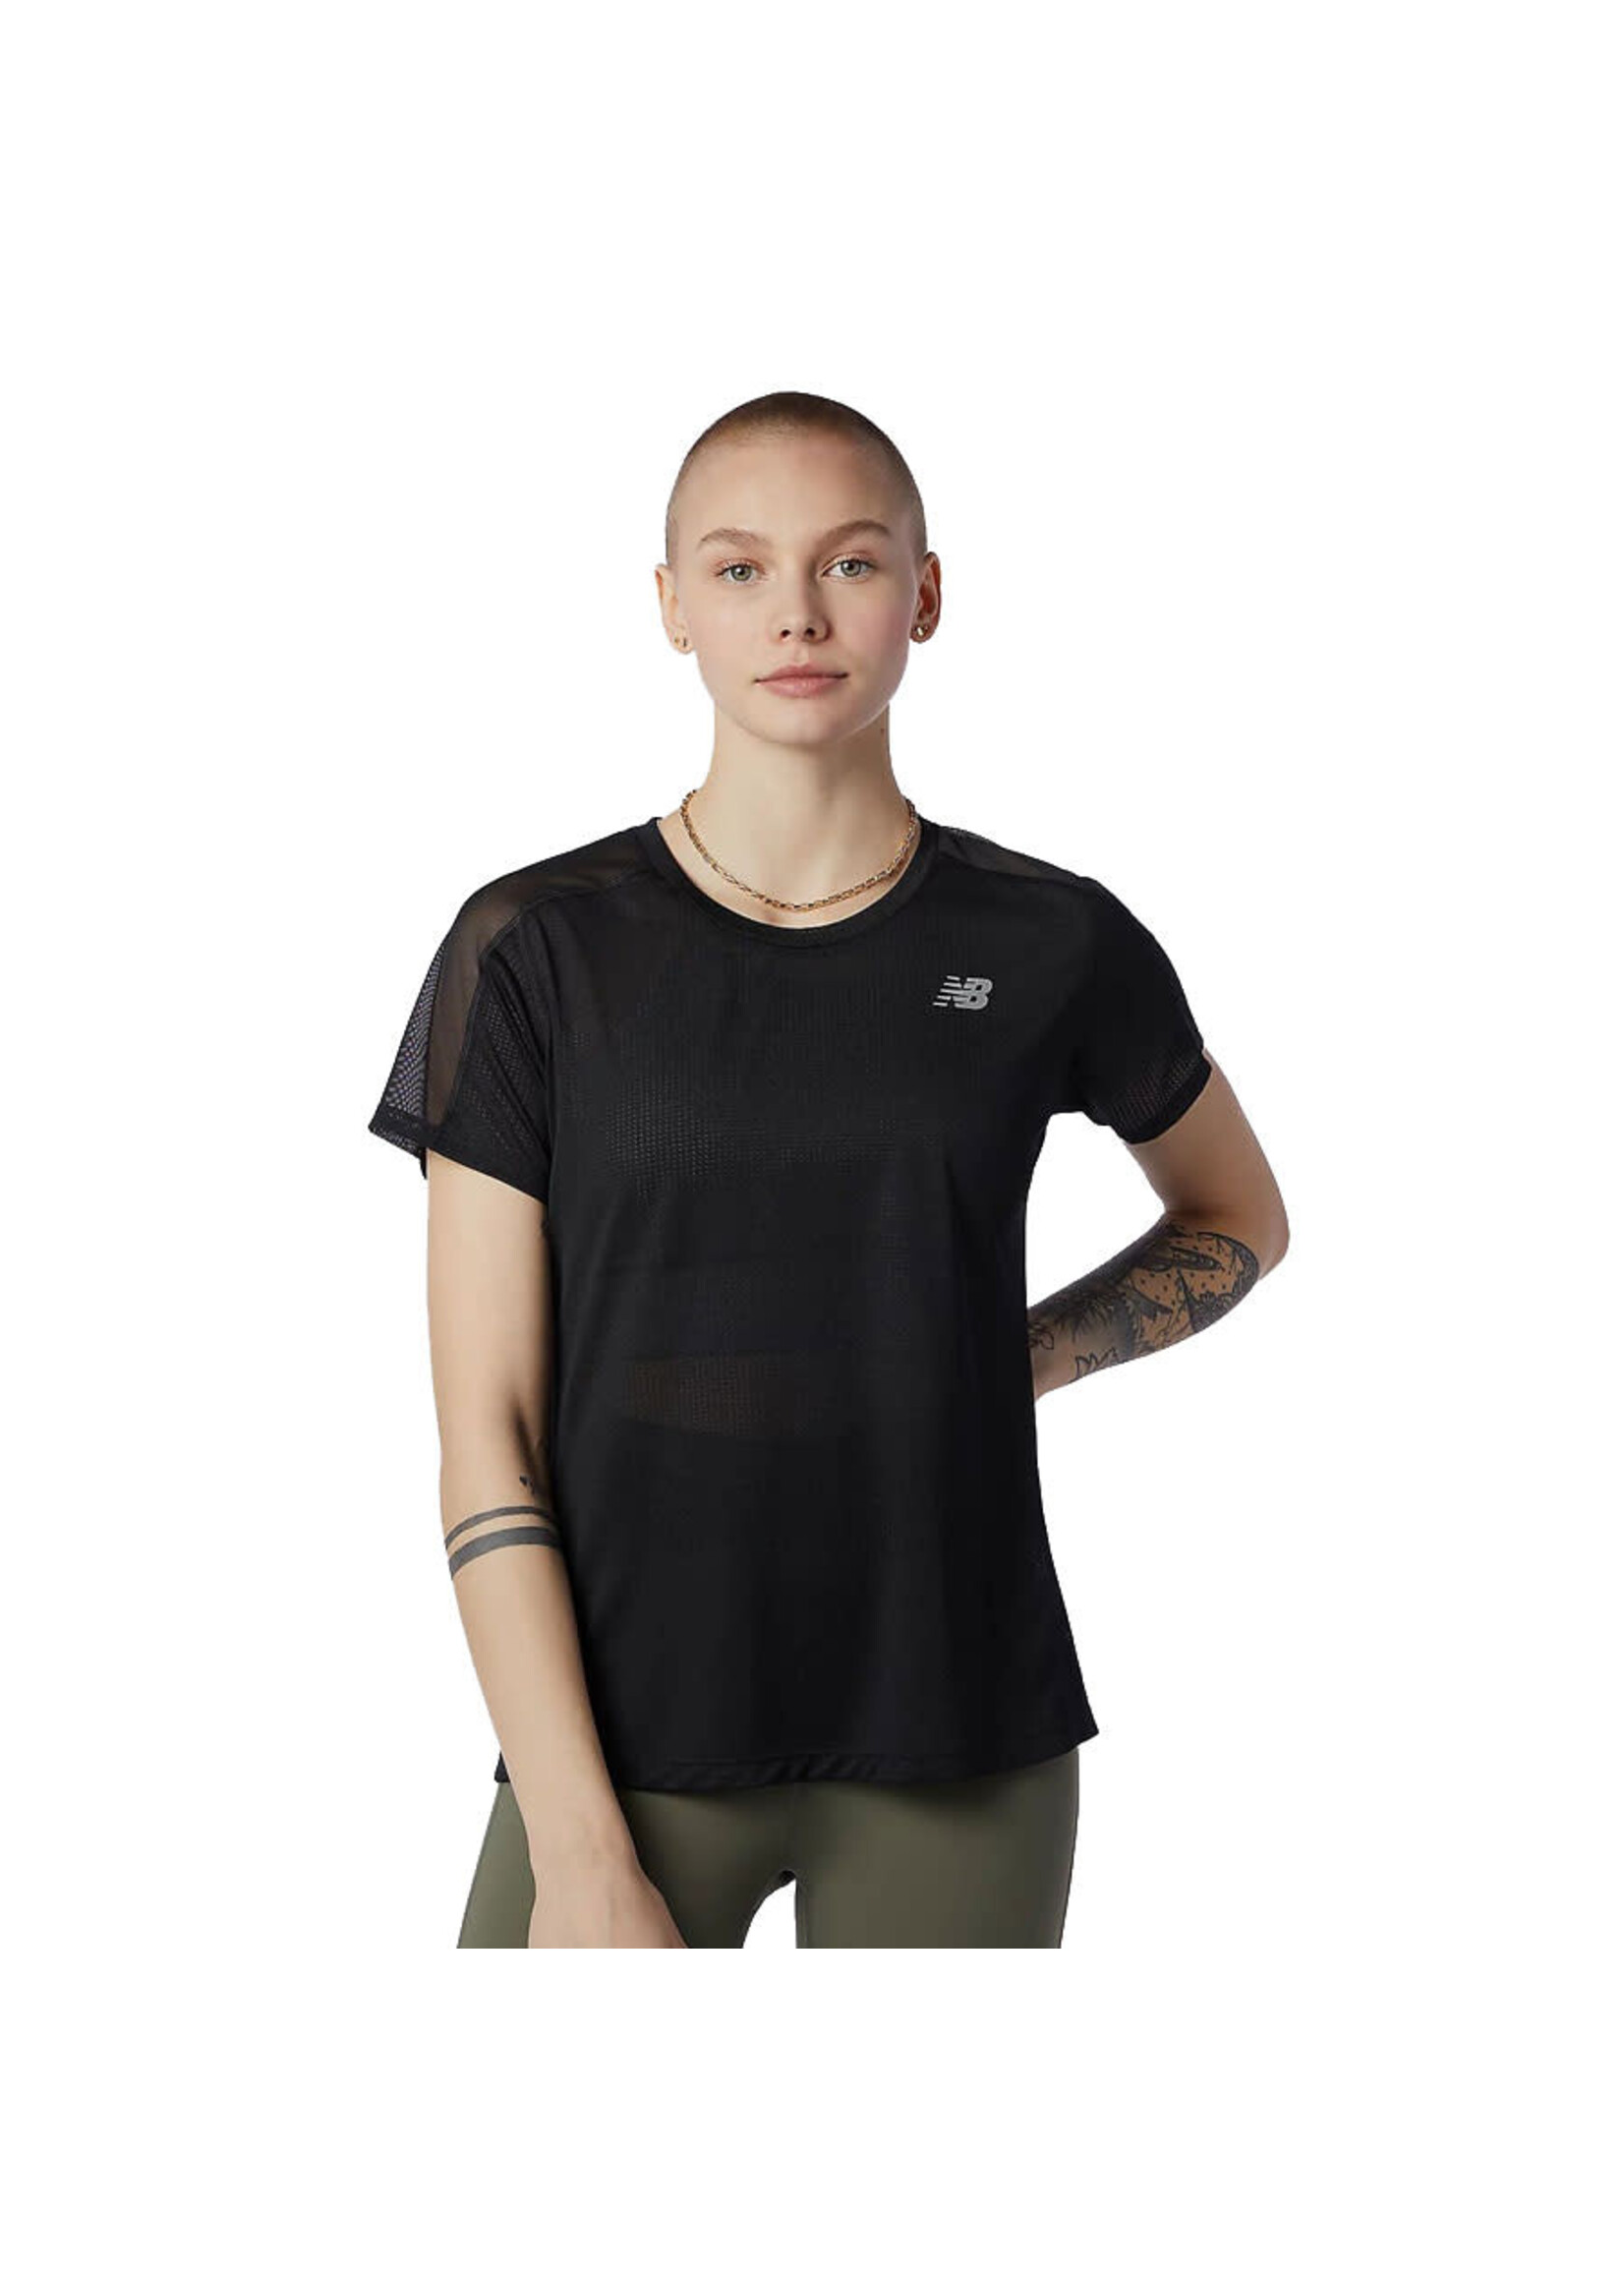 NEW BALANCE T-shirt IMPACT RUN (Femme)